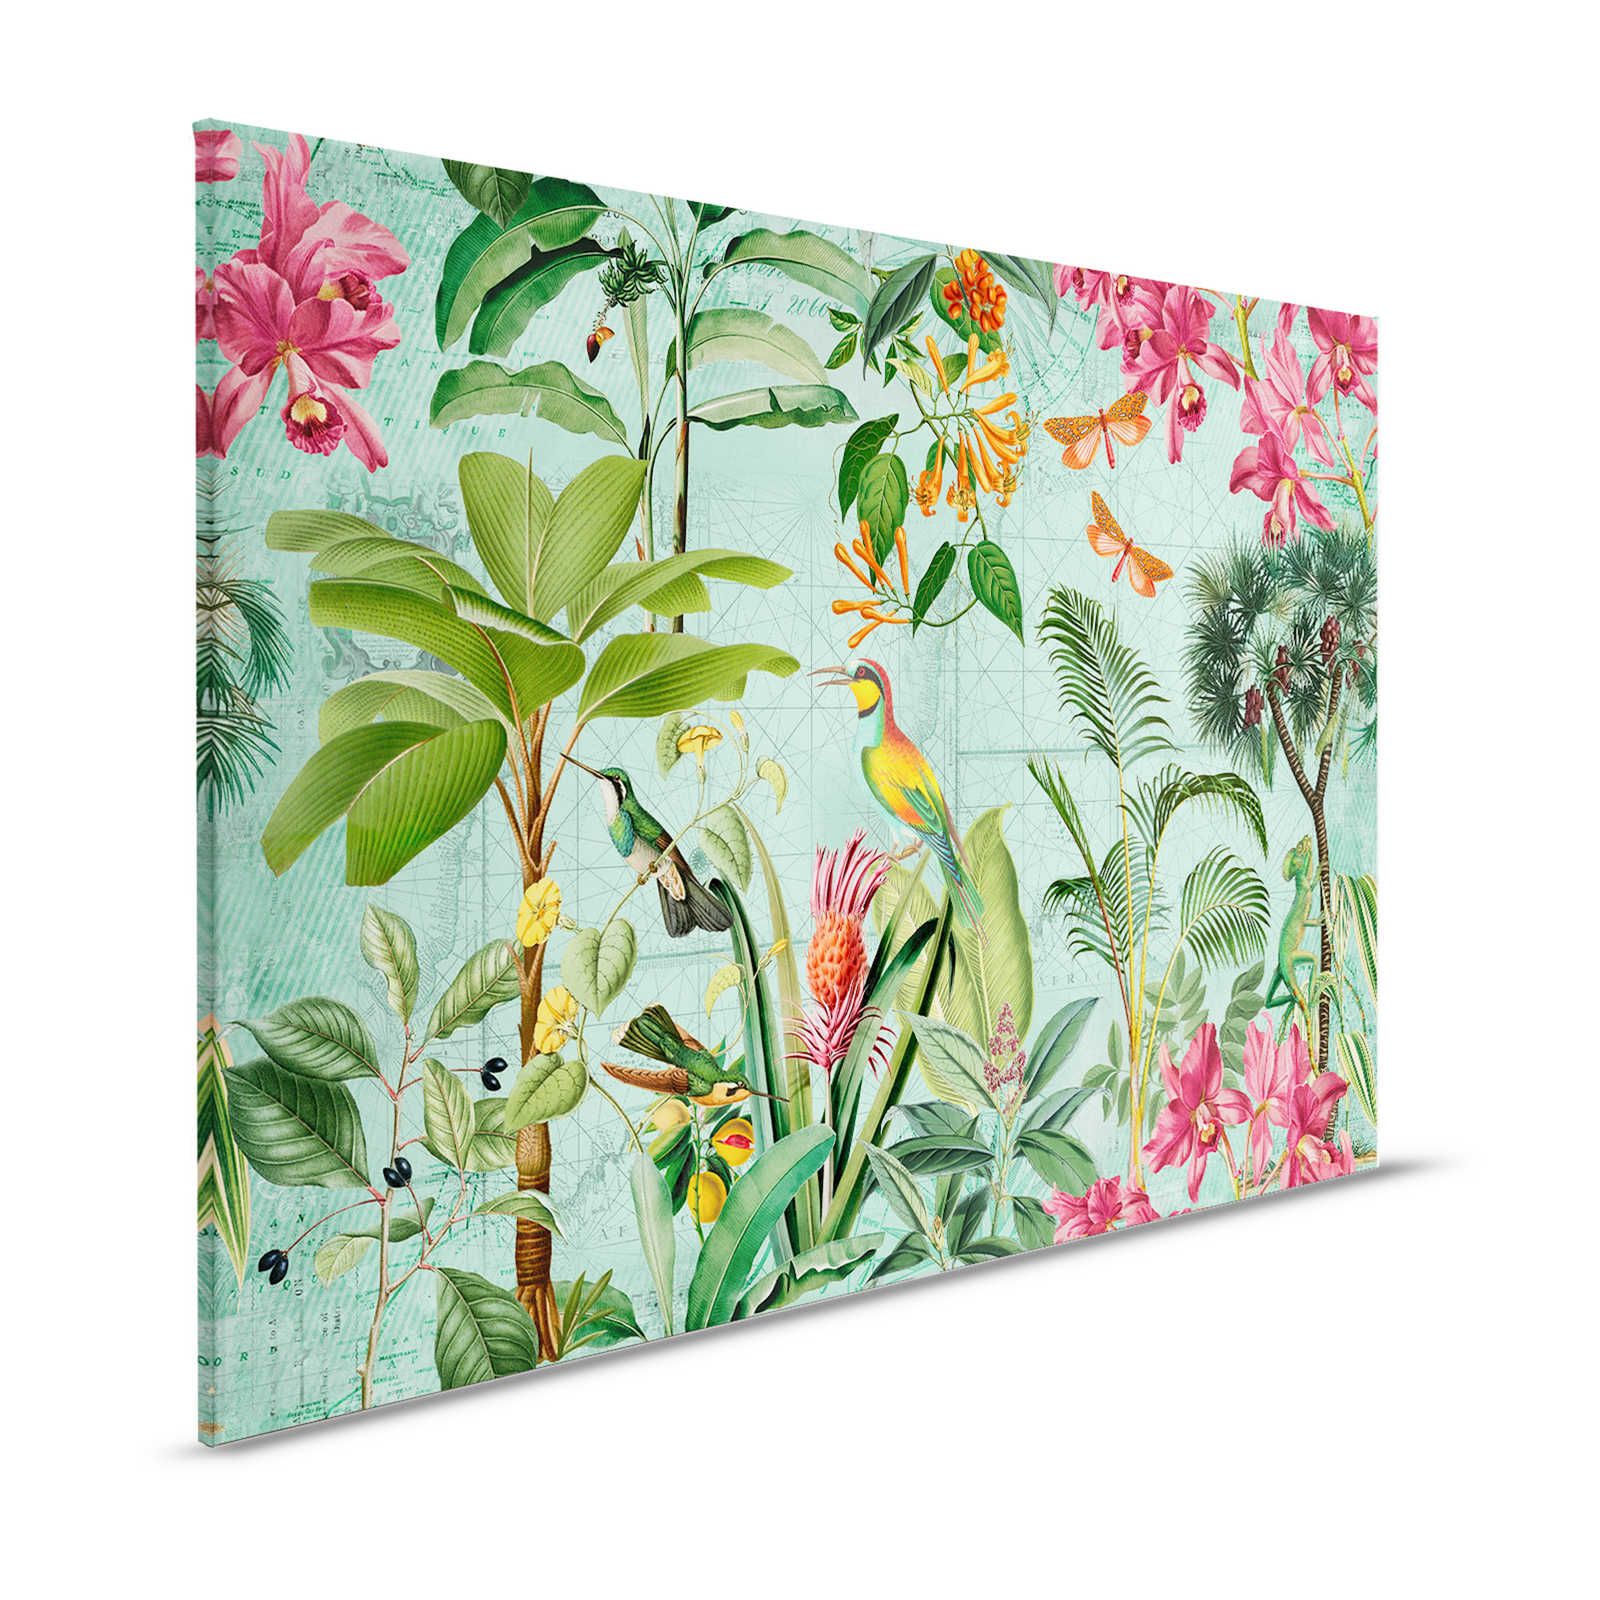 Bont Jungle Canvas Schilderij met Bomen, Bloemrijk & Dieren - 1,20 m x 0,80 m
